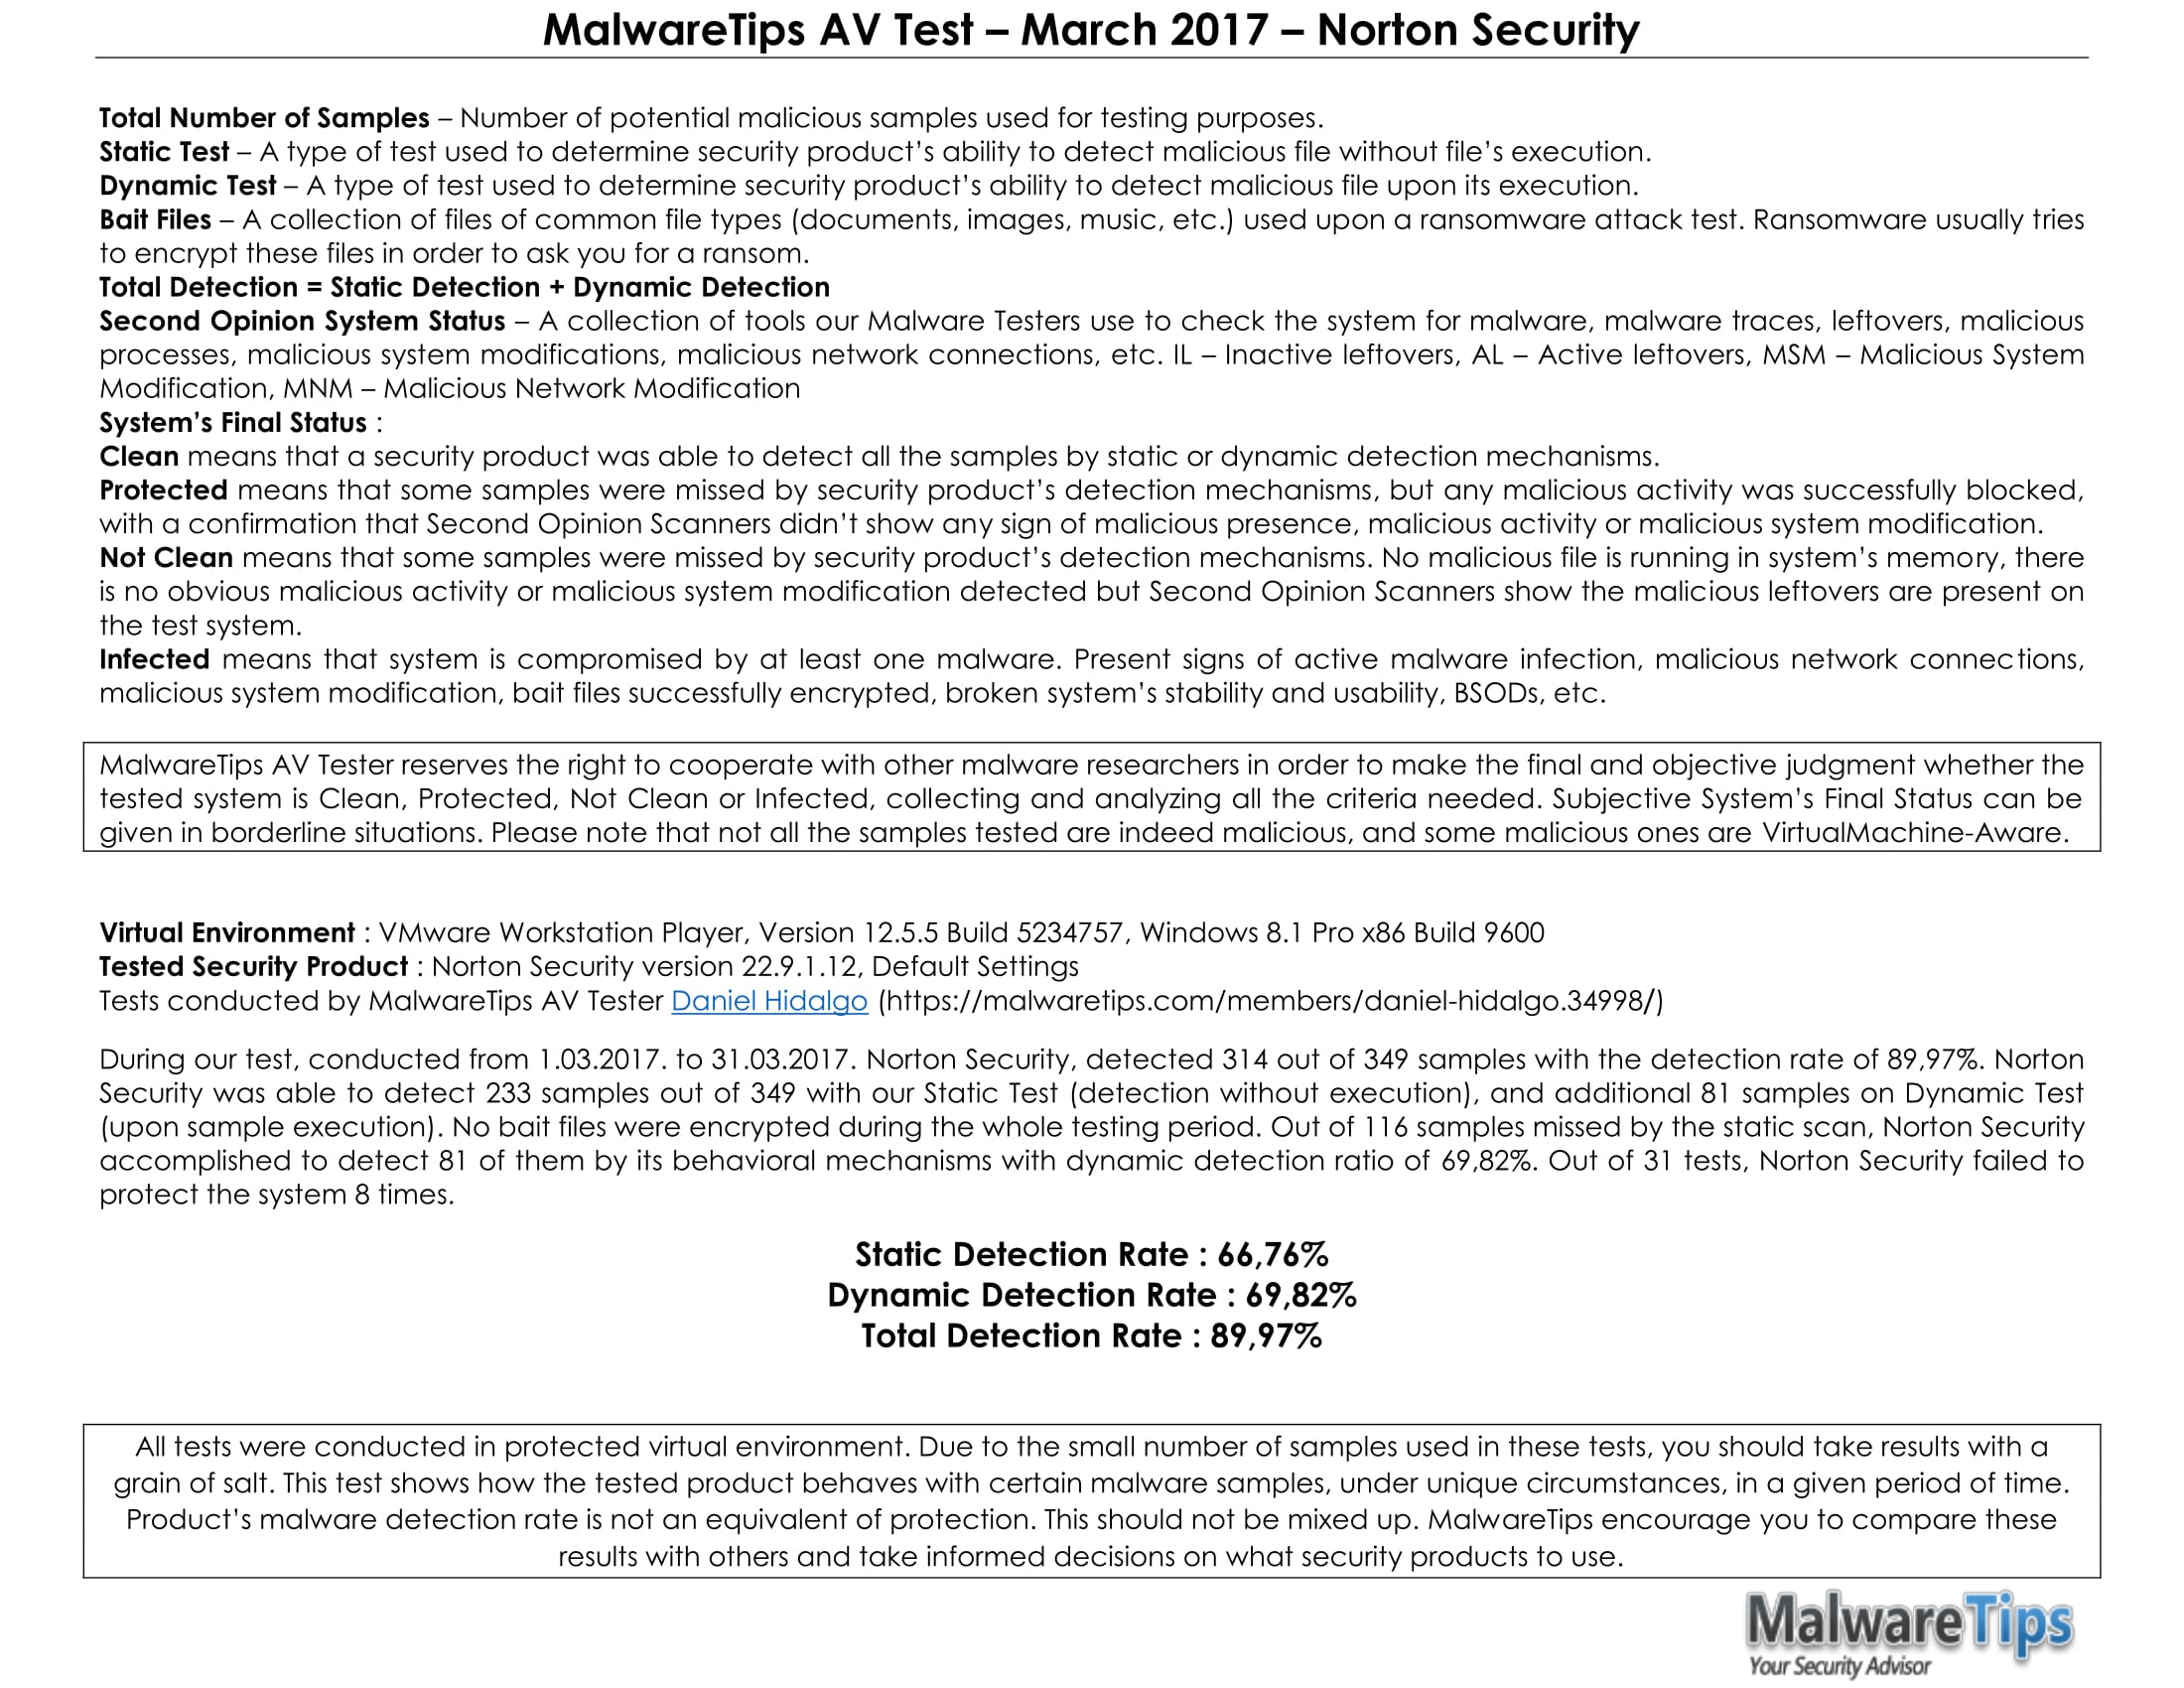 MalwareTips AV Test – March 2017 – Norton Security-2.jpg